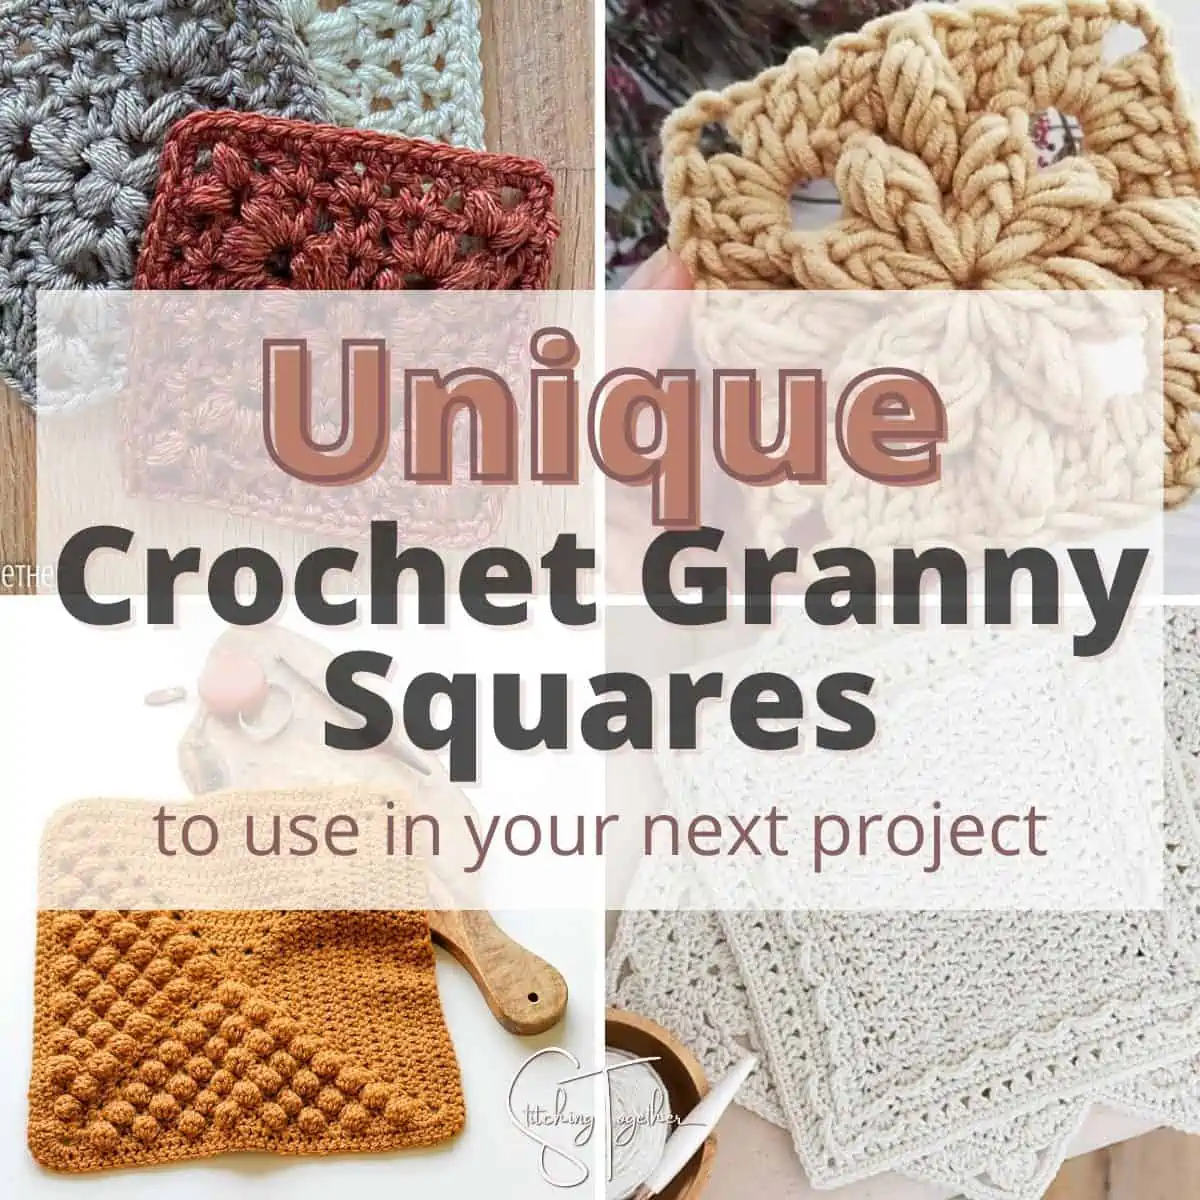 Turkey Kitchen Towel - Free Crochet Towel Pattern - A Crocheted Simplicity